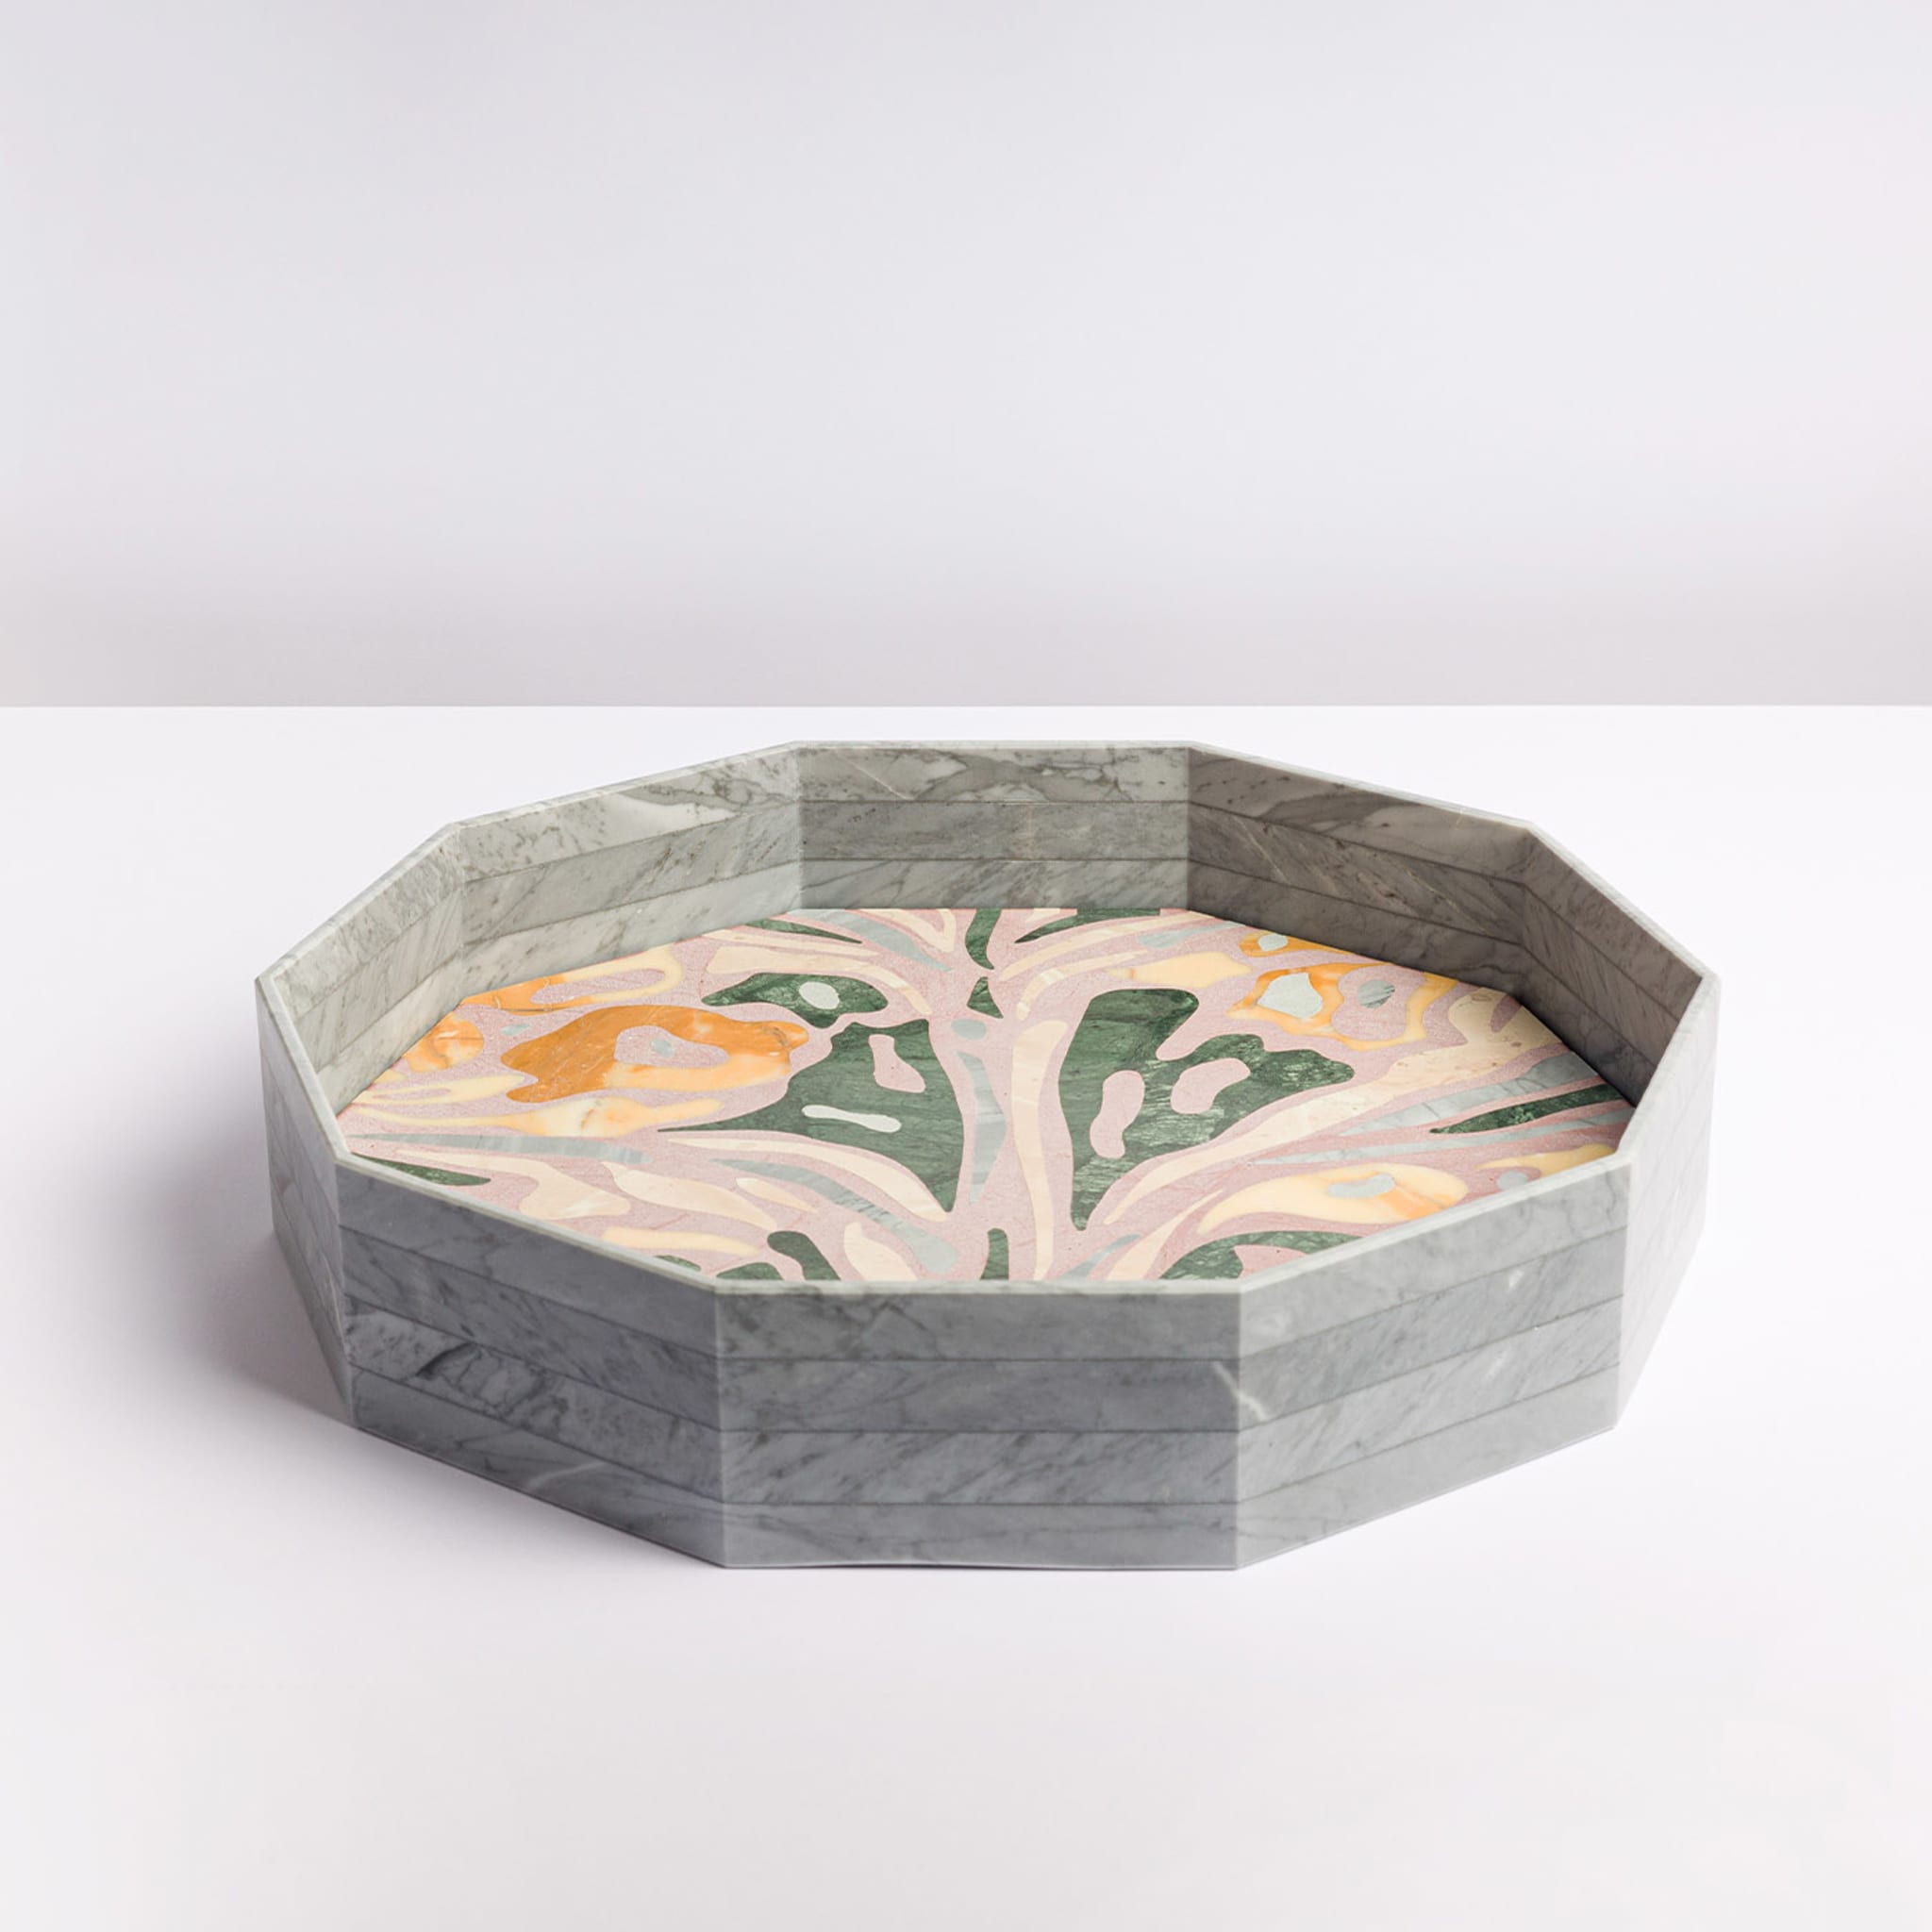 Marble Marbling Decagonal Tray by Zanellato&Bortotto #1 - Alternative view 2